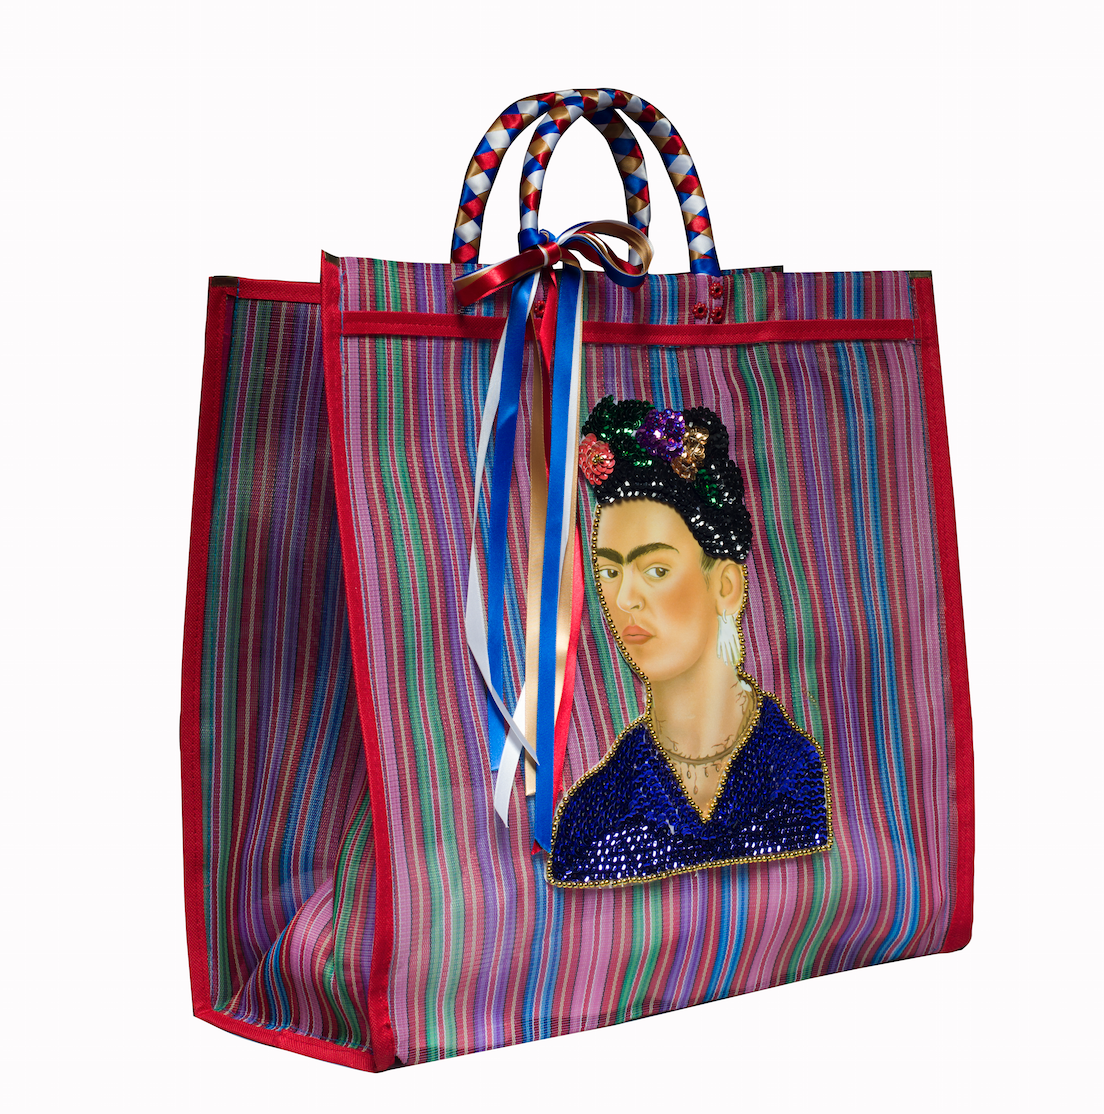 Frida Kahlo market bag